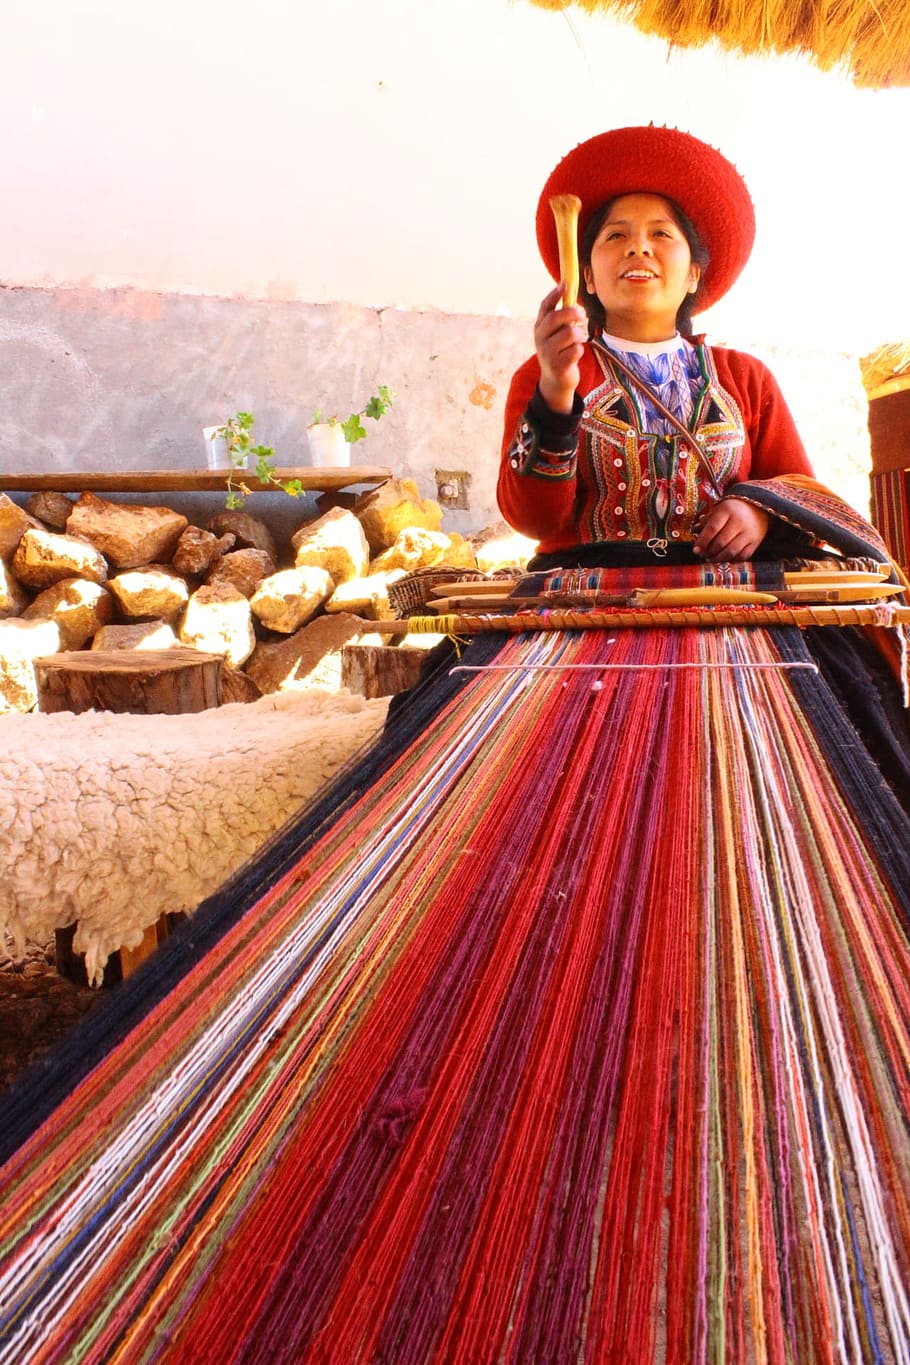 女性, 織物, 赤, オレンジ, 糸, ペルー, アンデス, 農村, 伝統的, インカ